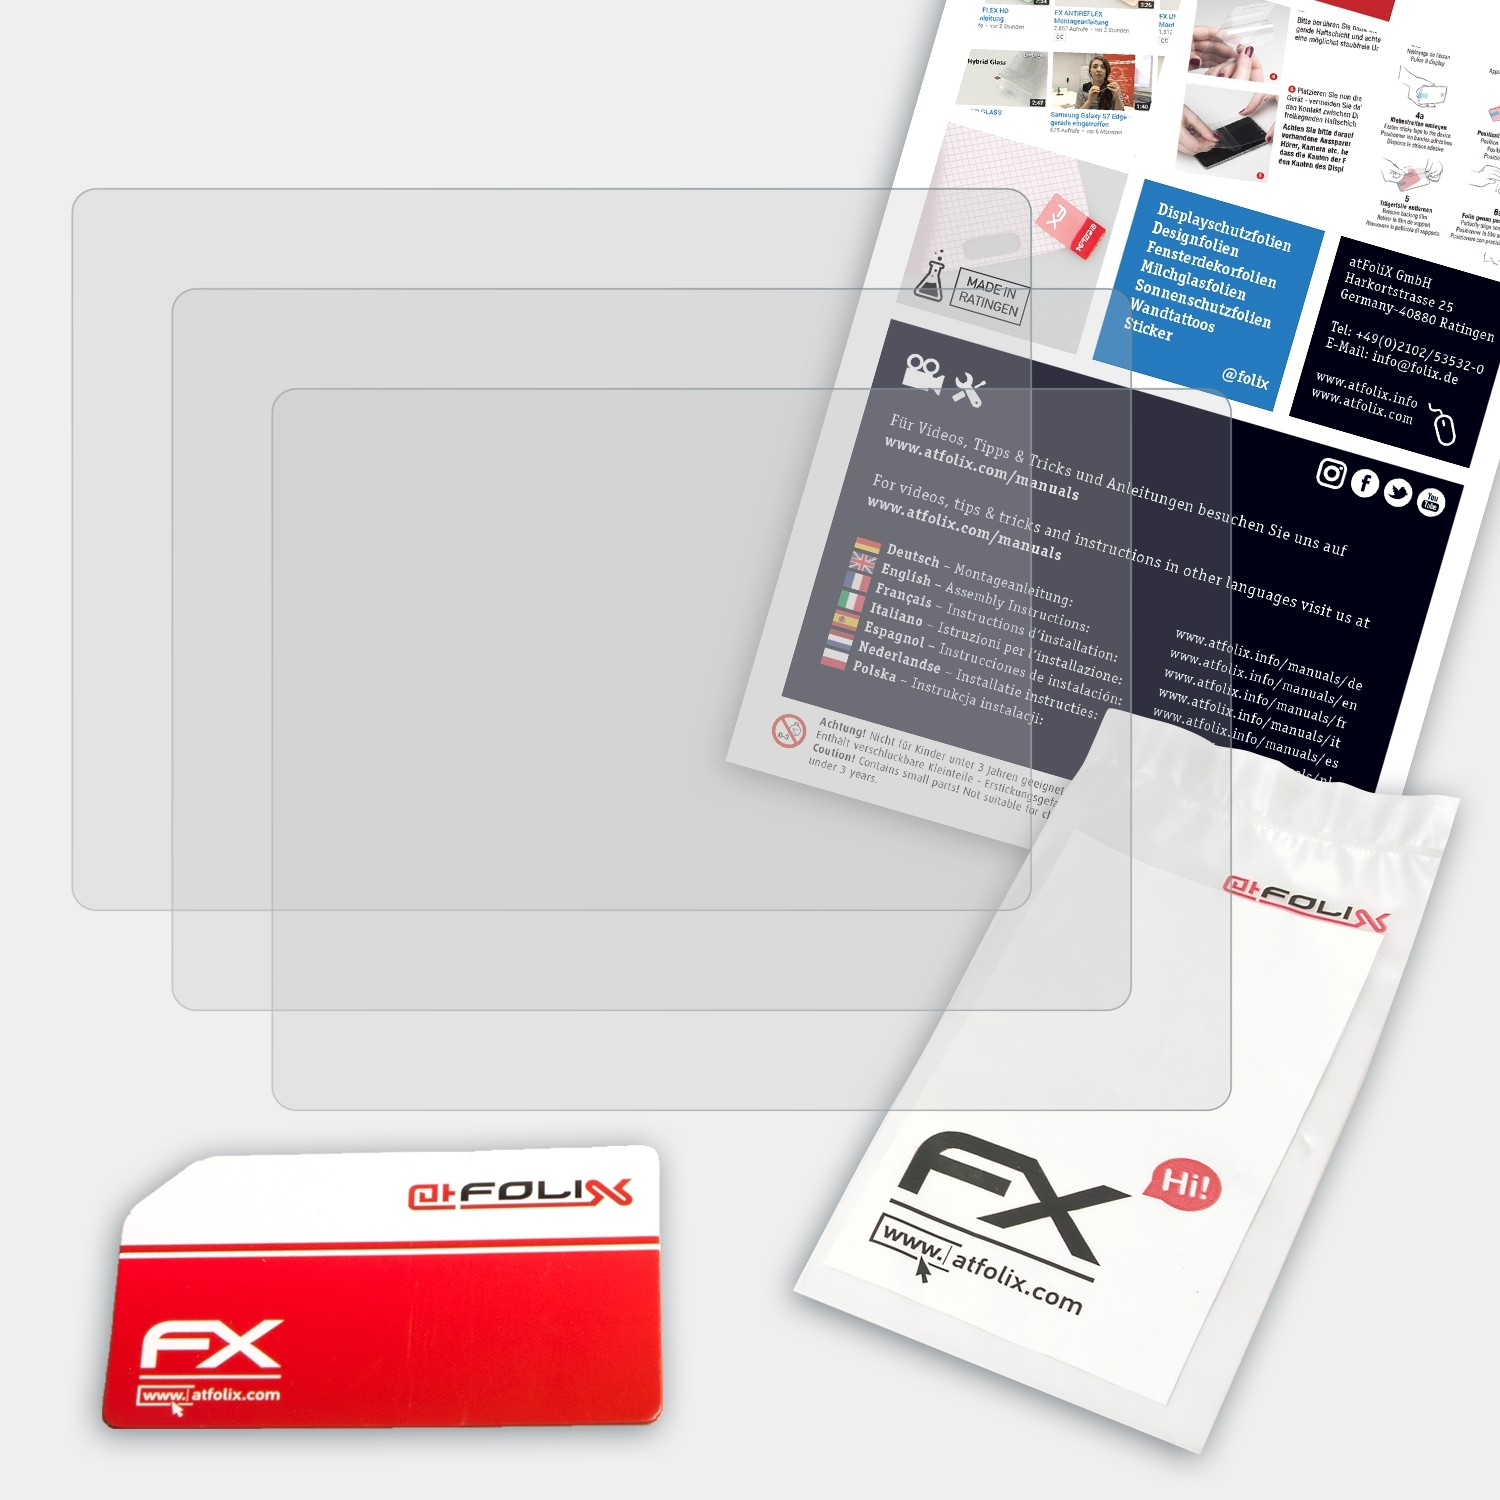 Displayschutz(für Panasonic 3x FX-Antireflex DMC-FT3) Lumix ATFOLIX